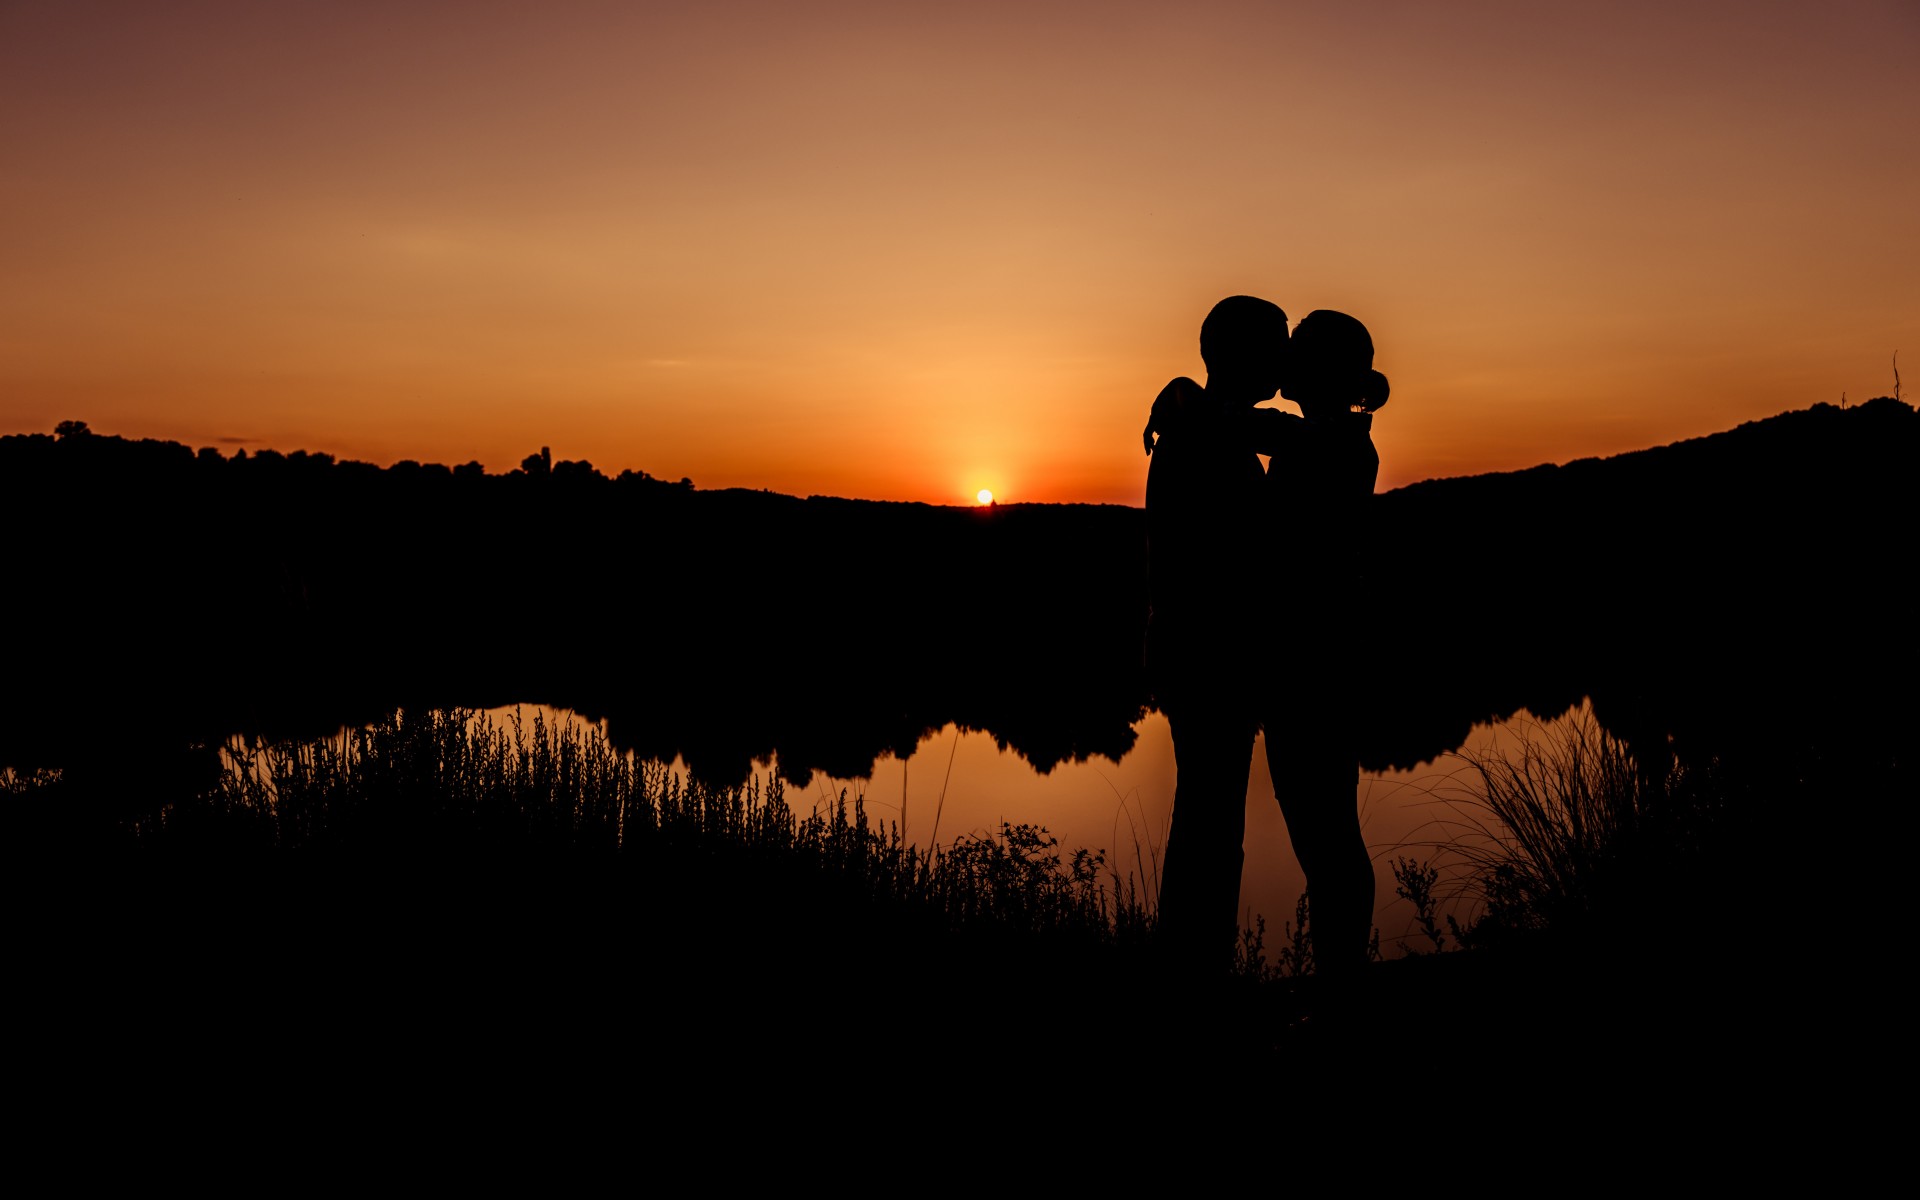 fondos de pantalla románticos de beso,cielo,puesta de sol,paisaje natural,noche,oscuridad